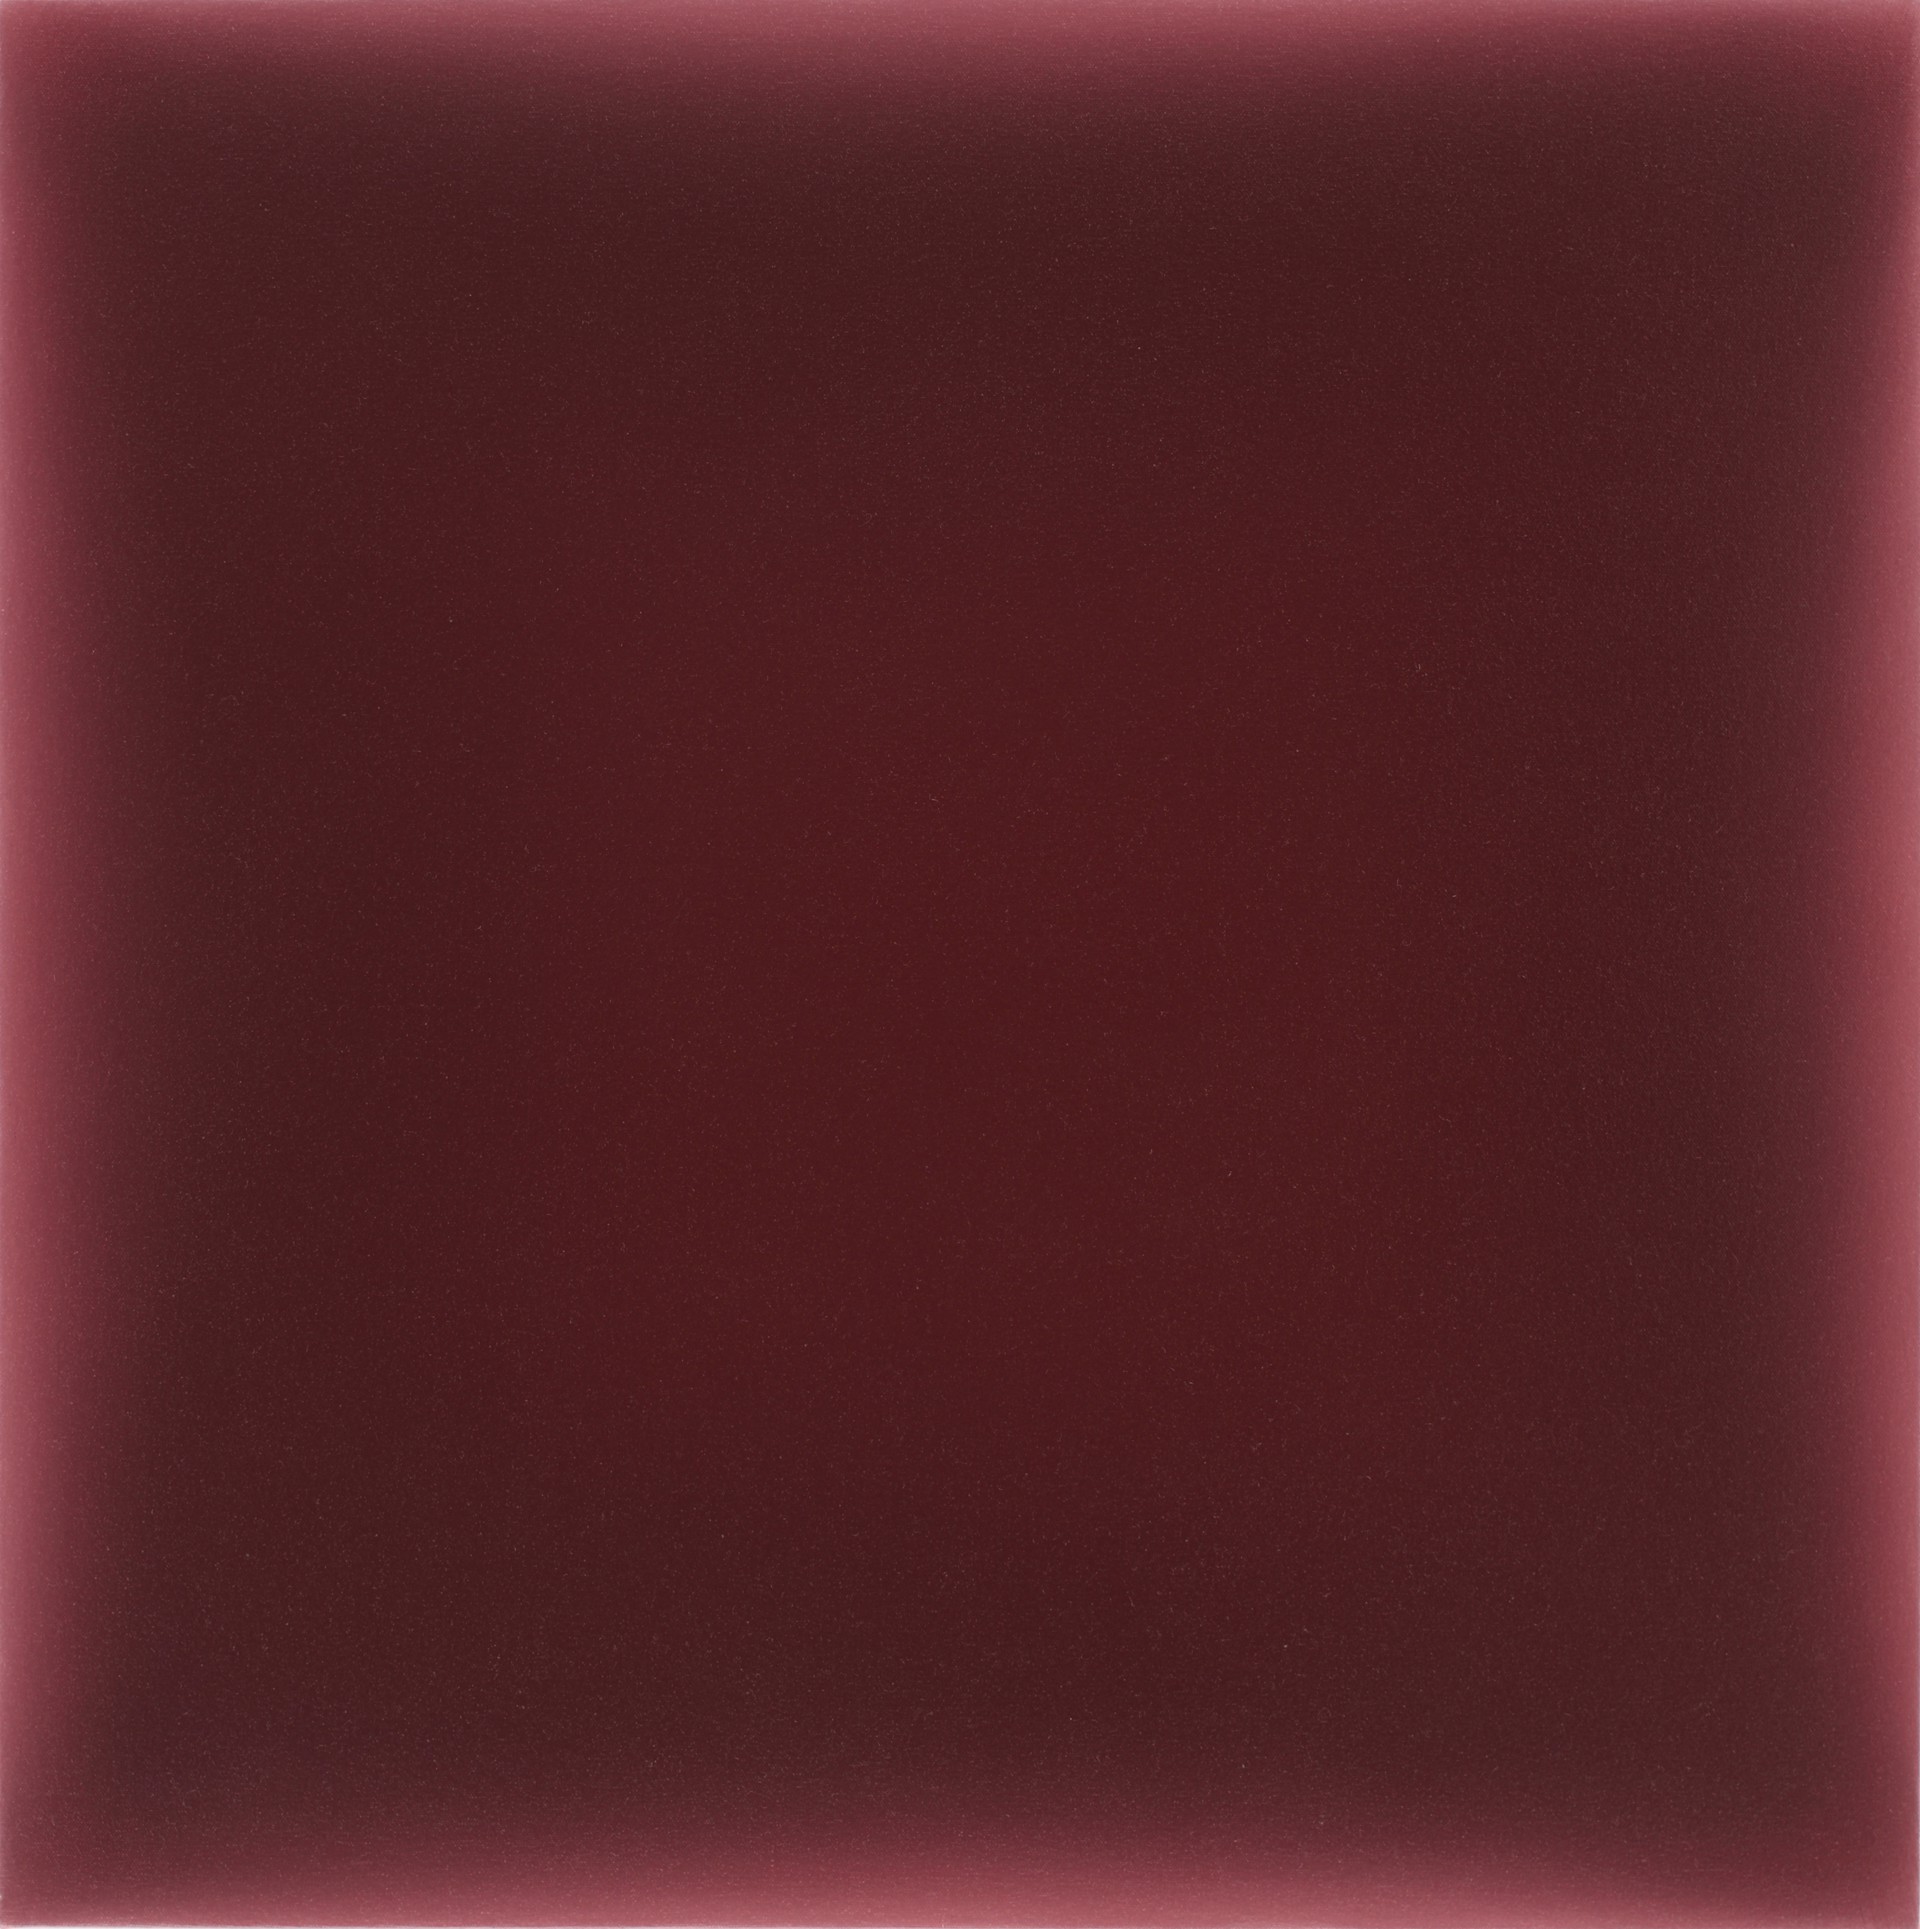 10.13.23, darkened cadmium red on muted crimson by Gwen Hardie